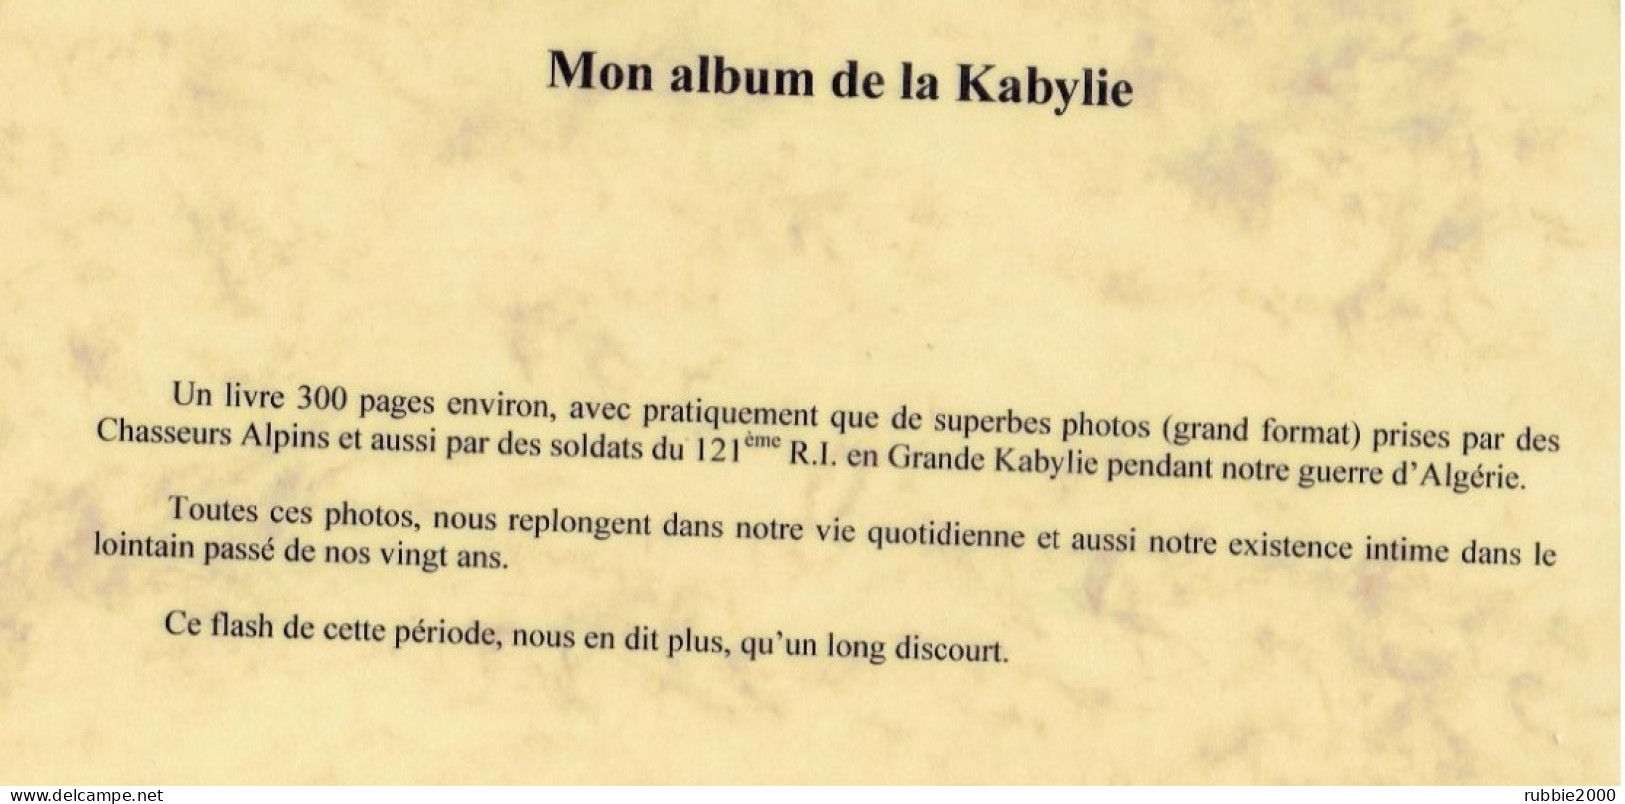 MON ALBUM DE LA KABYLIE 1959 1962 MICHEL TEYSSOT ALGERIE FRANCAISE GUERRE PHOTOGRAPHIE - French